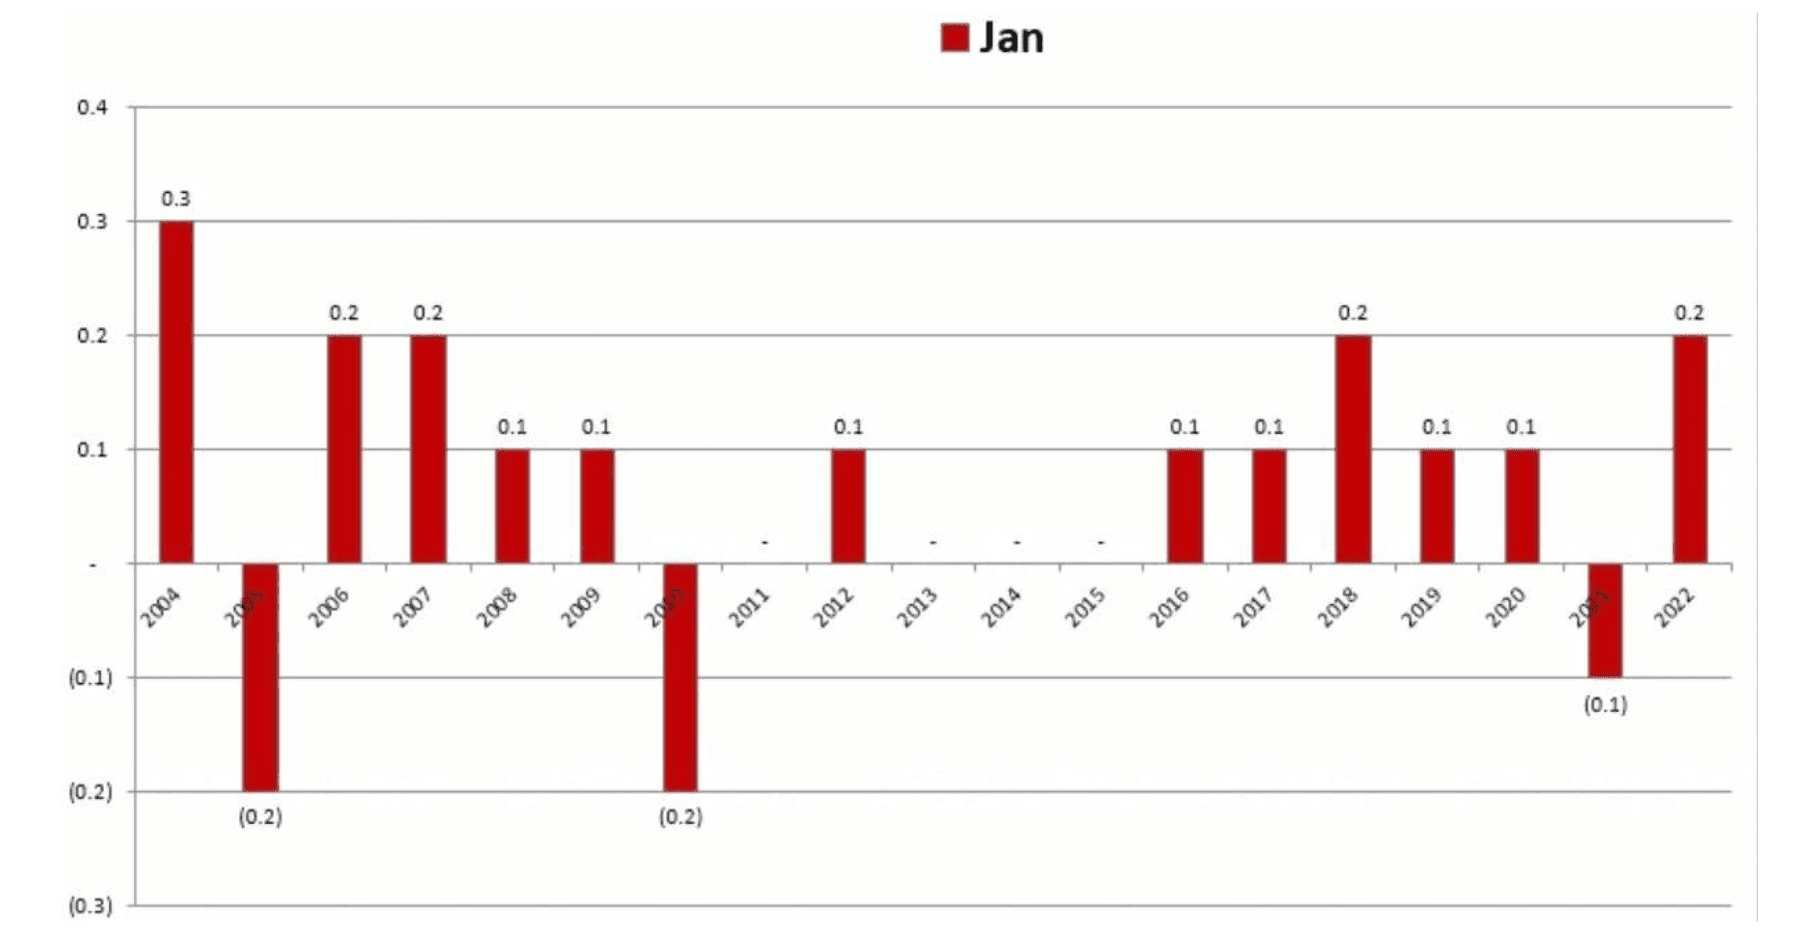 Chart 3: January CPI Seasonality